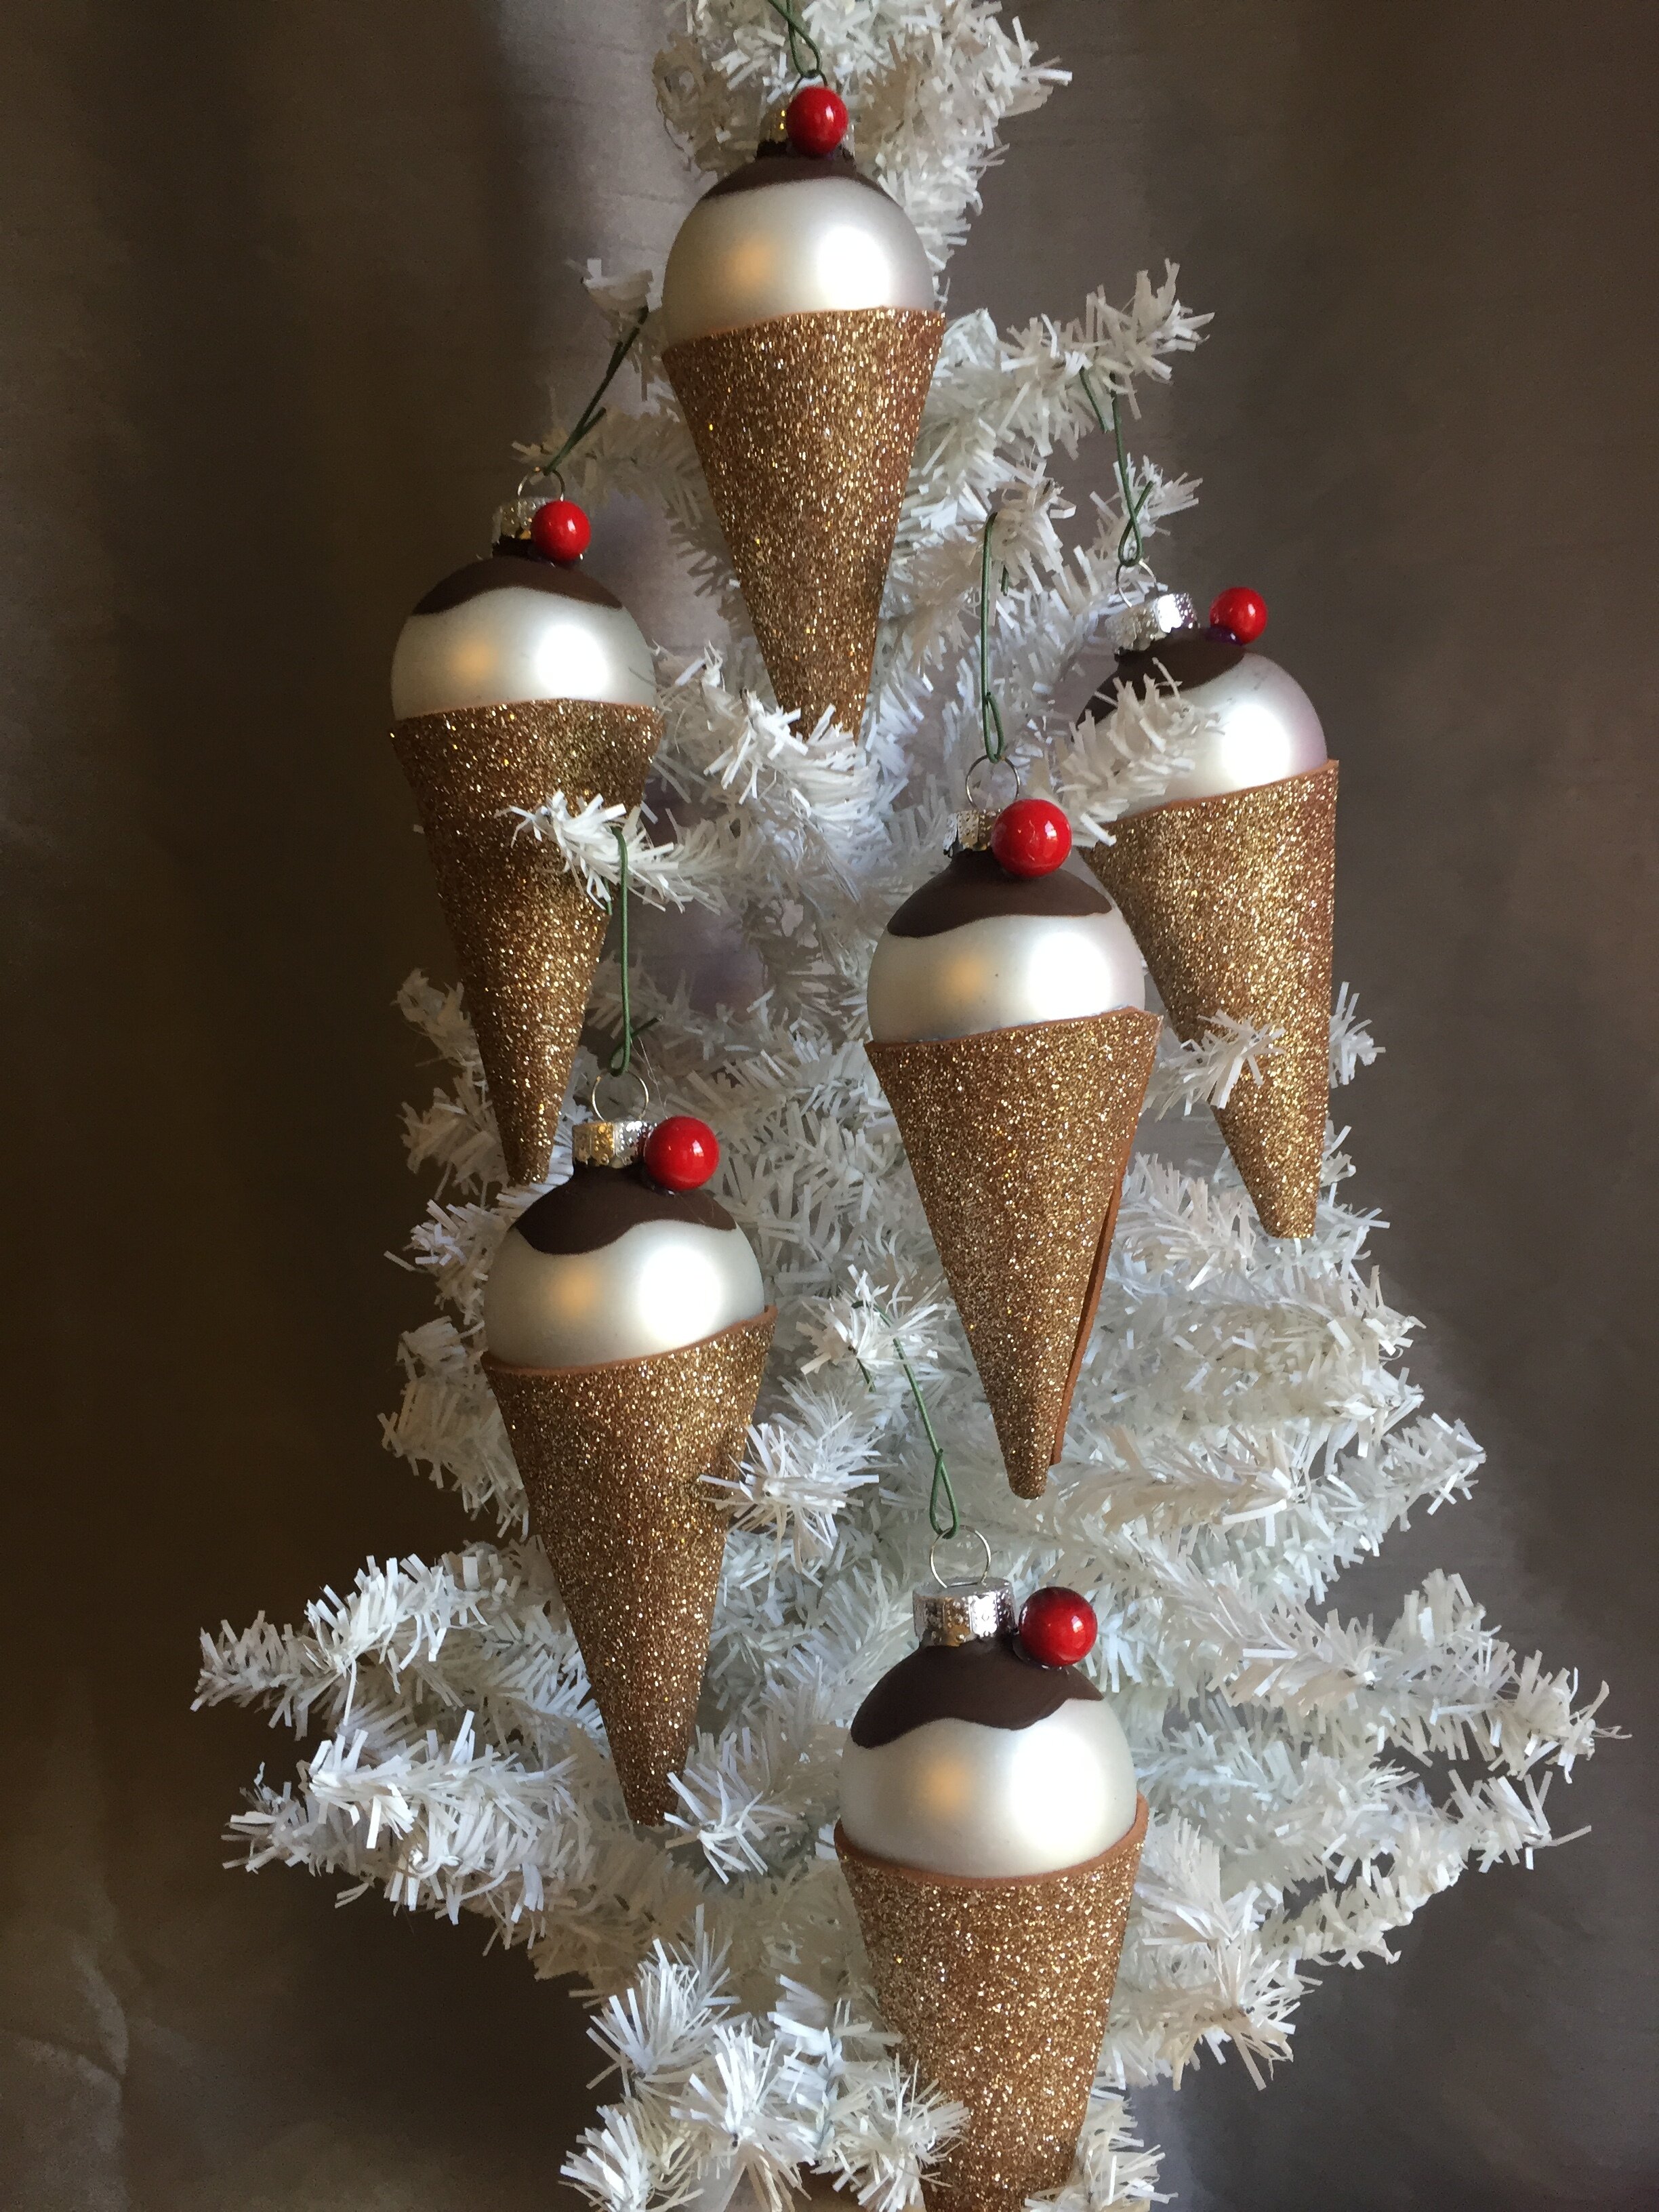 Honesto Barcelona convergencia ice cream cone ornaments — Cakes by Tricia Faye